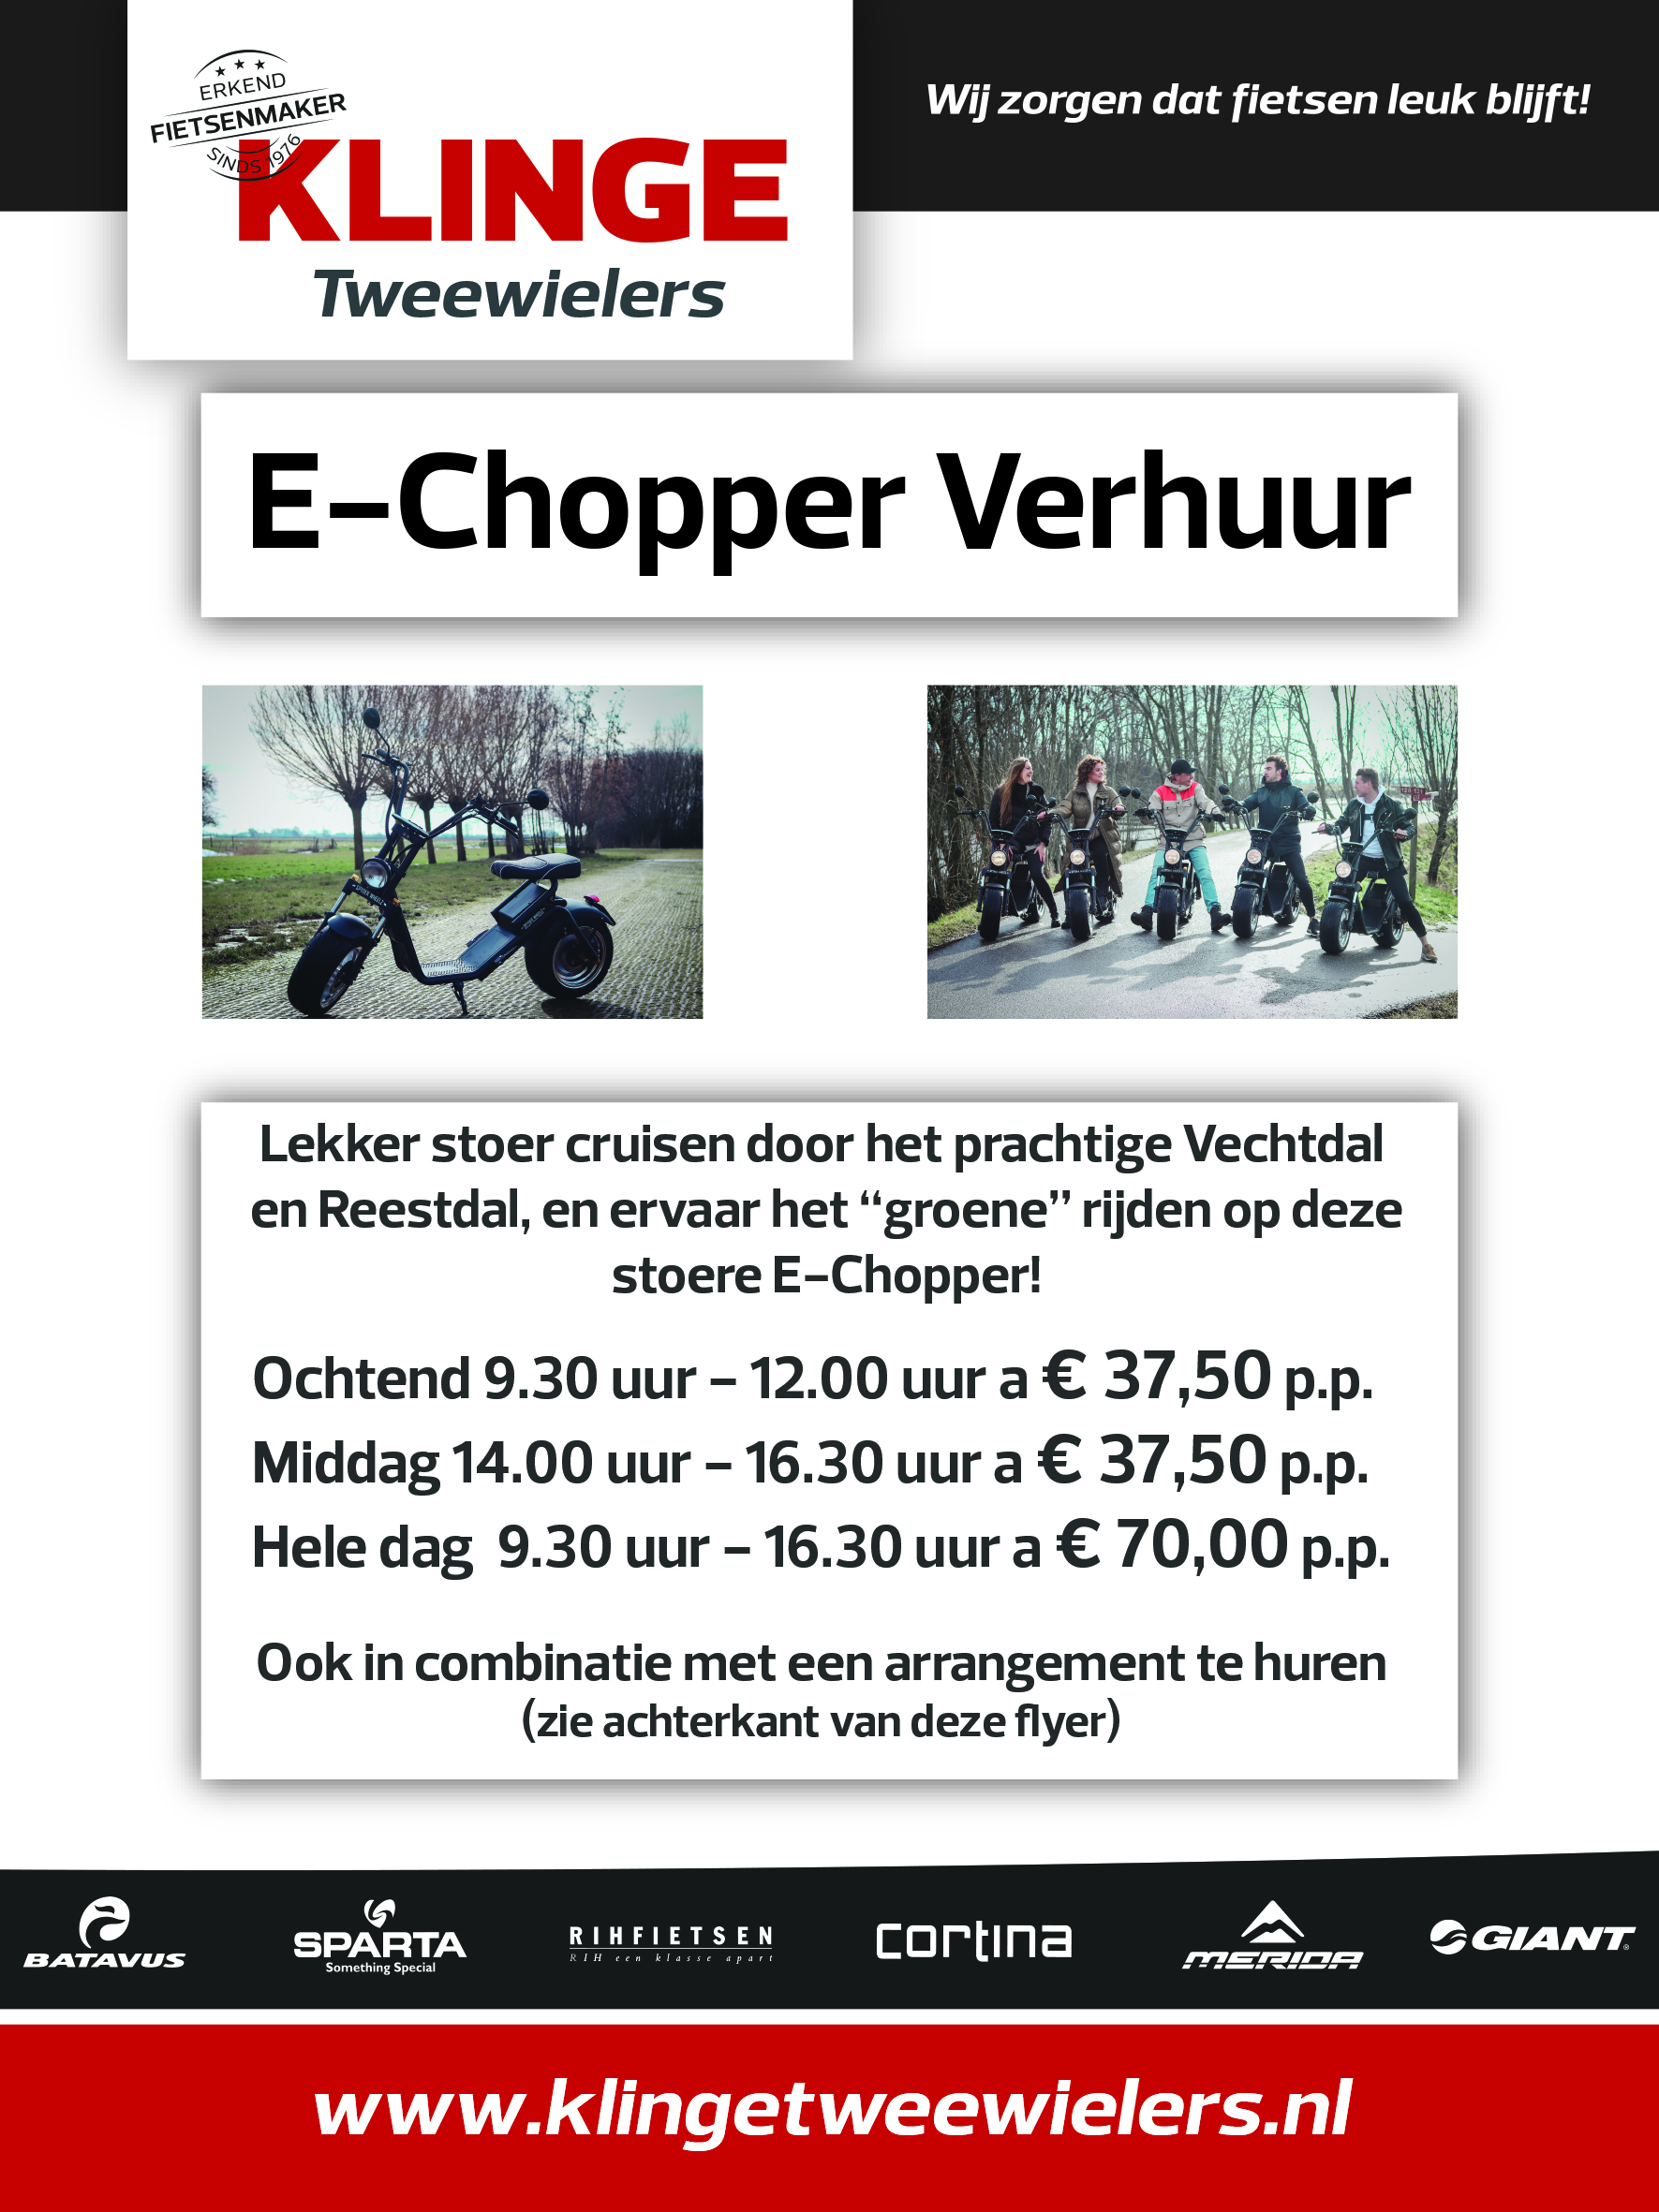 E-Chopper verhuur Klinge Tweewielers Nieuwleusen